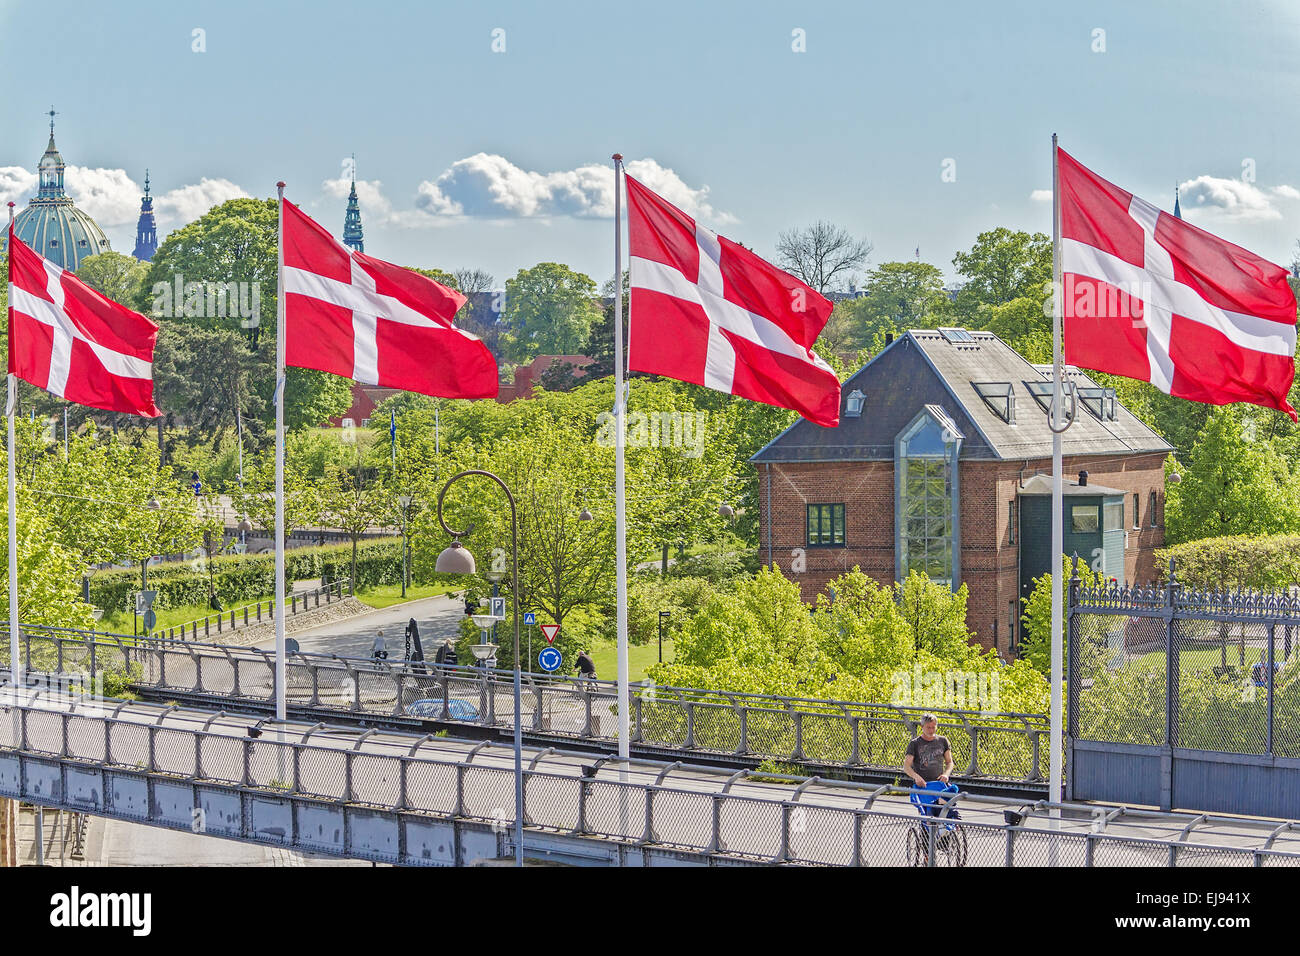 Danish Flags Flying Copenhagen Denmark Stock Photo